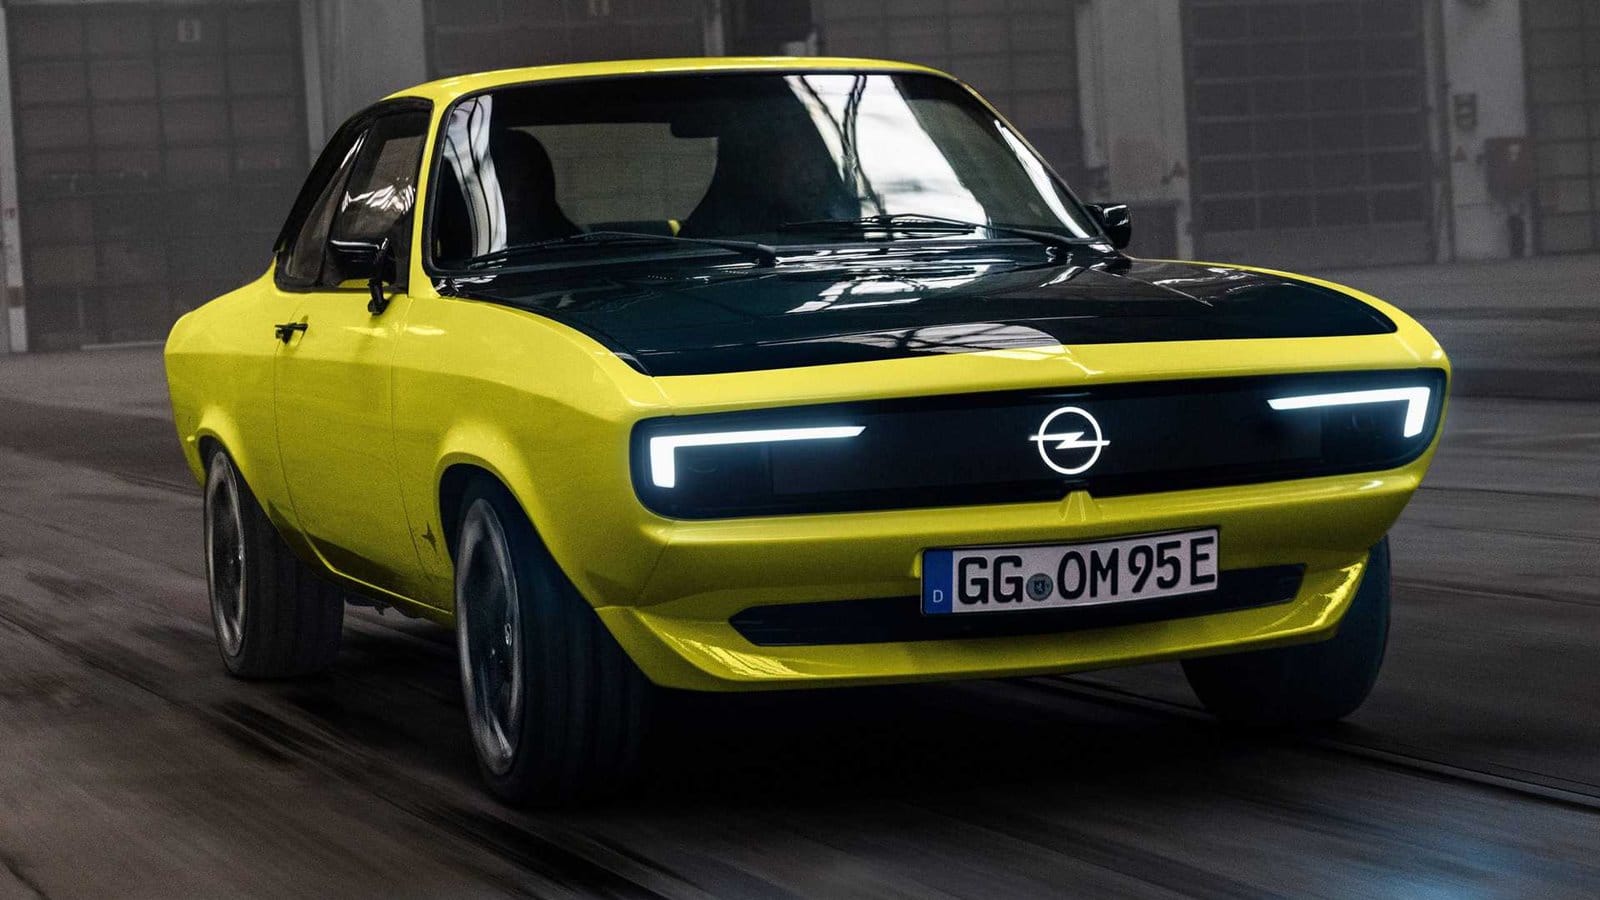 Veremos una Opel eléctrica en 2028